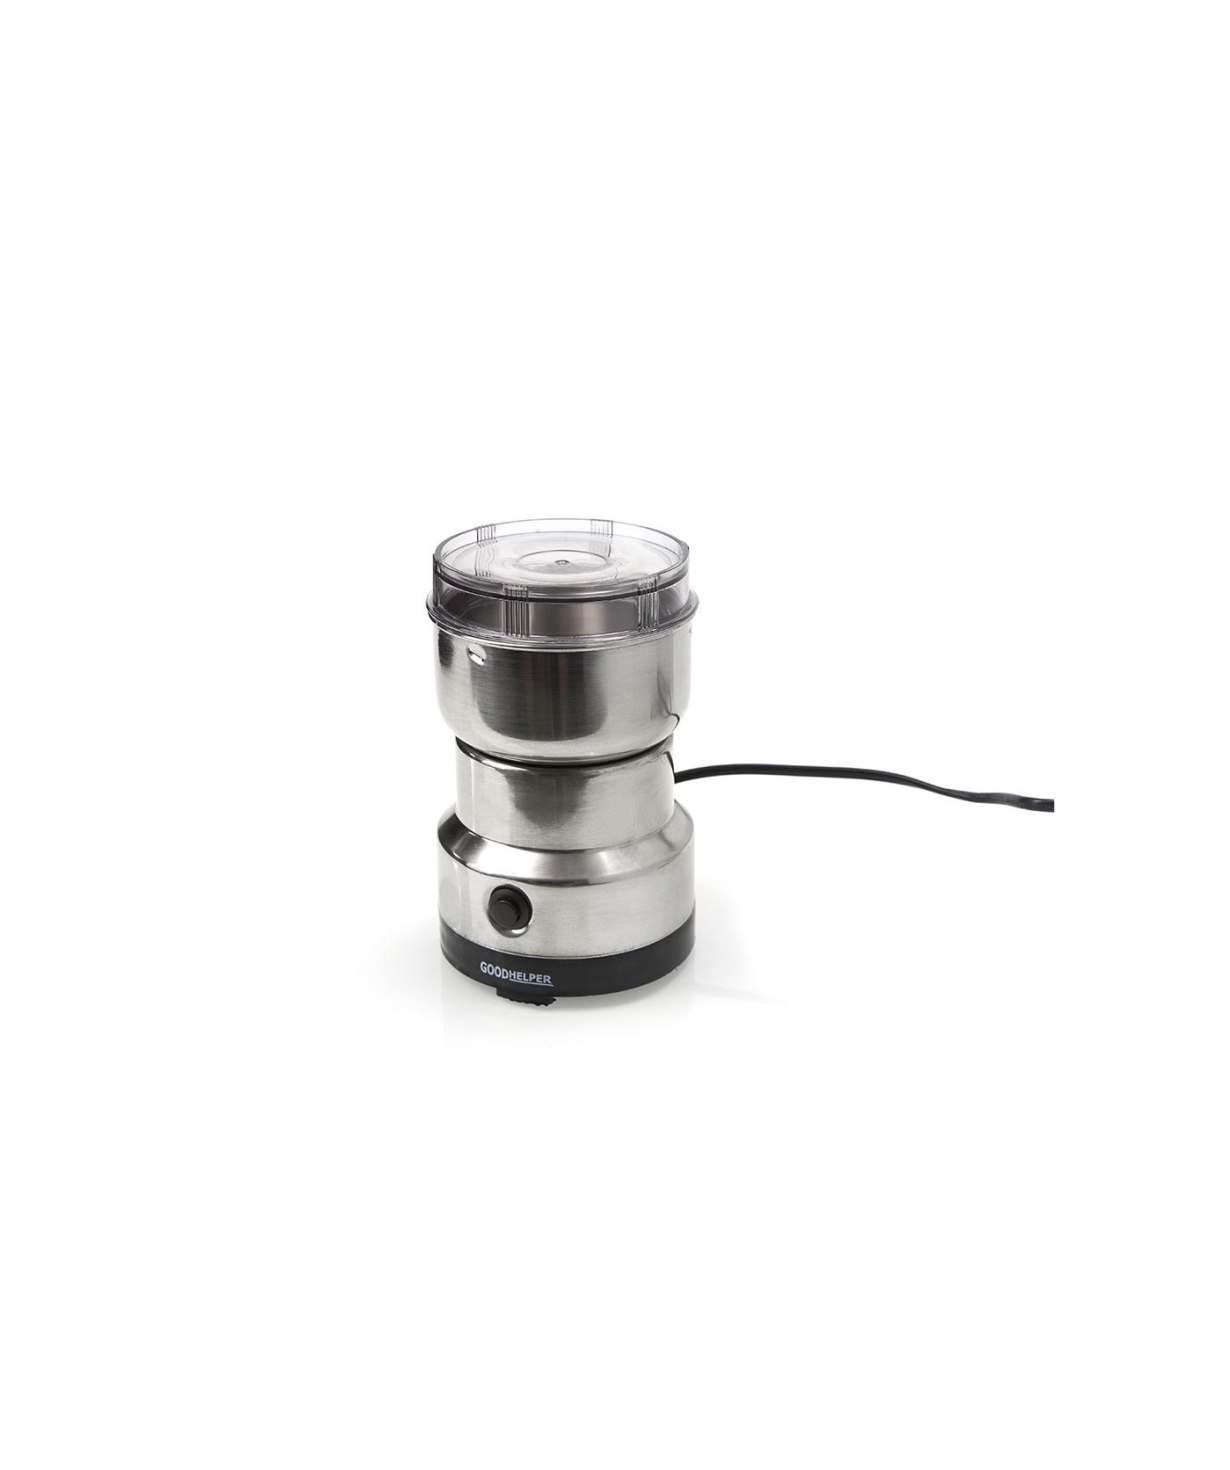 Electric coffee grinder CG-K02